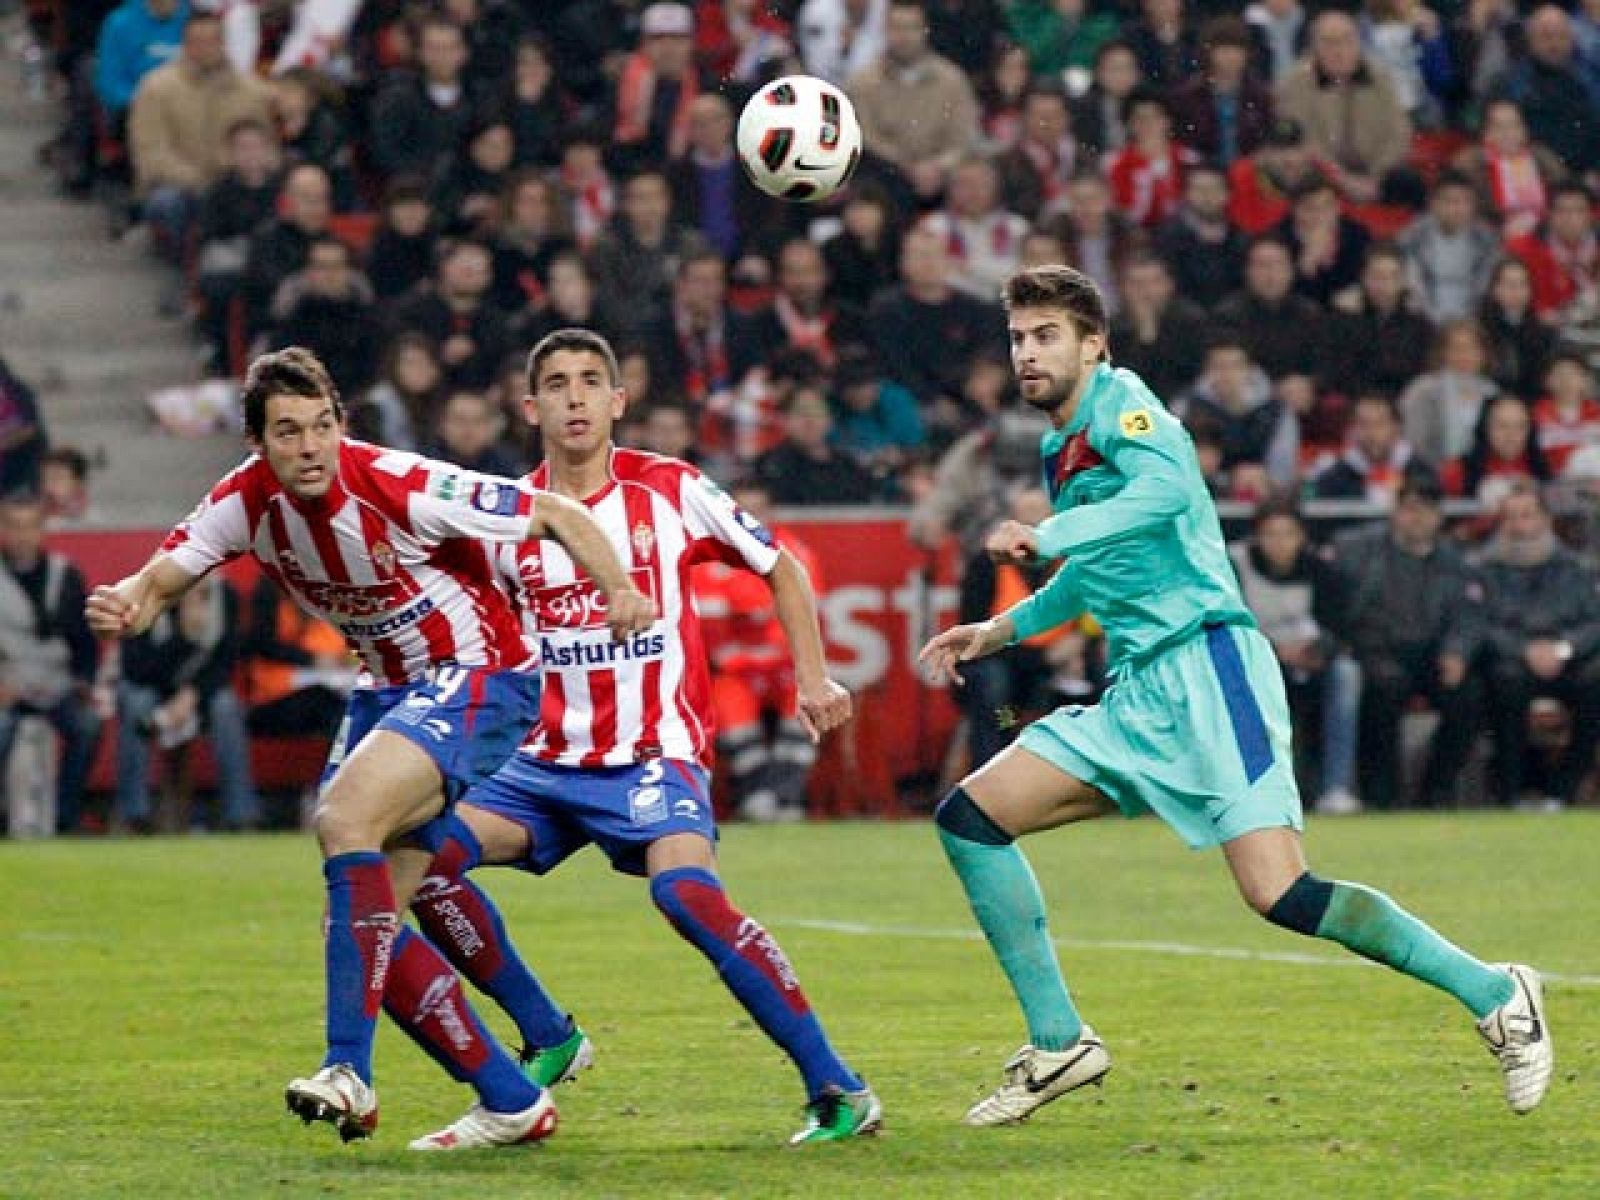 El jugador del Sporting, José Angel, durante un partido frente al que será su nuevo equipo, el Barça.